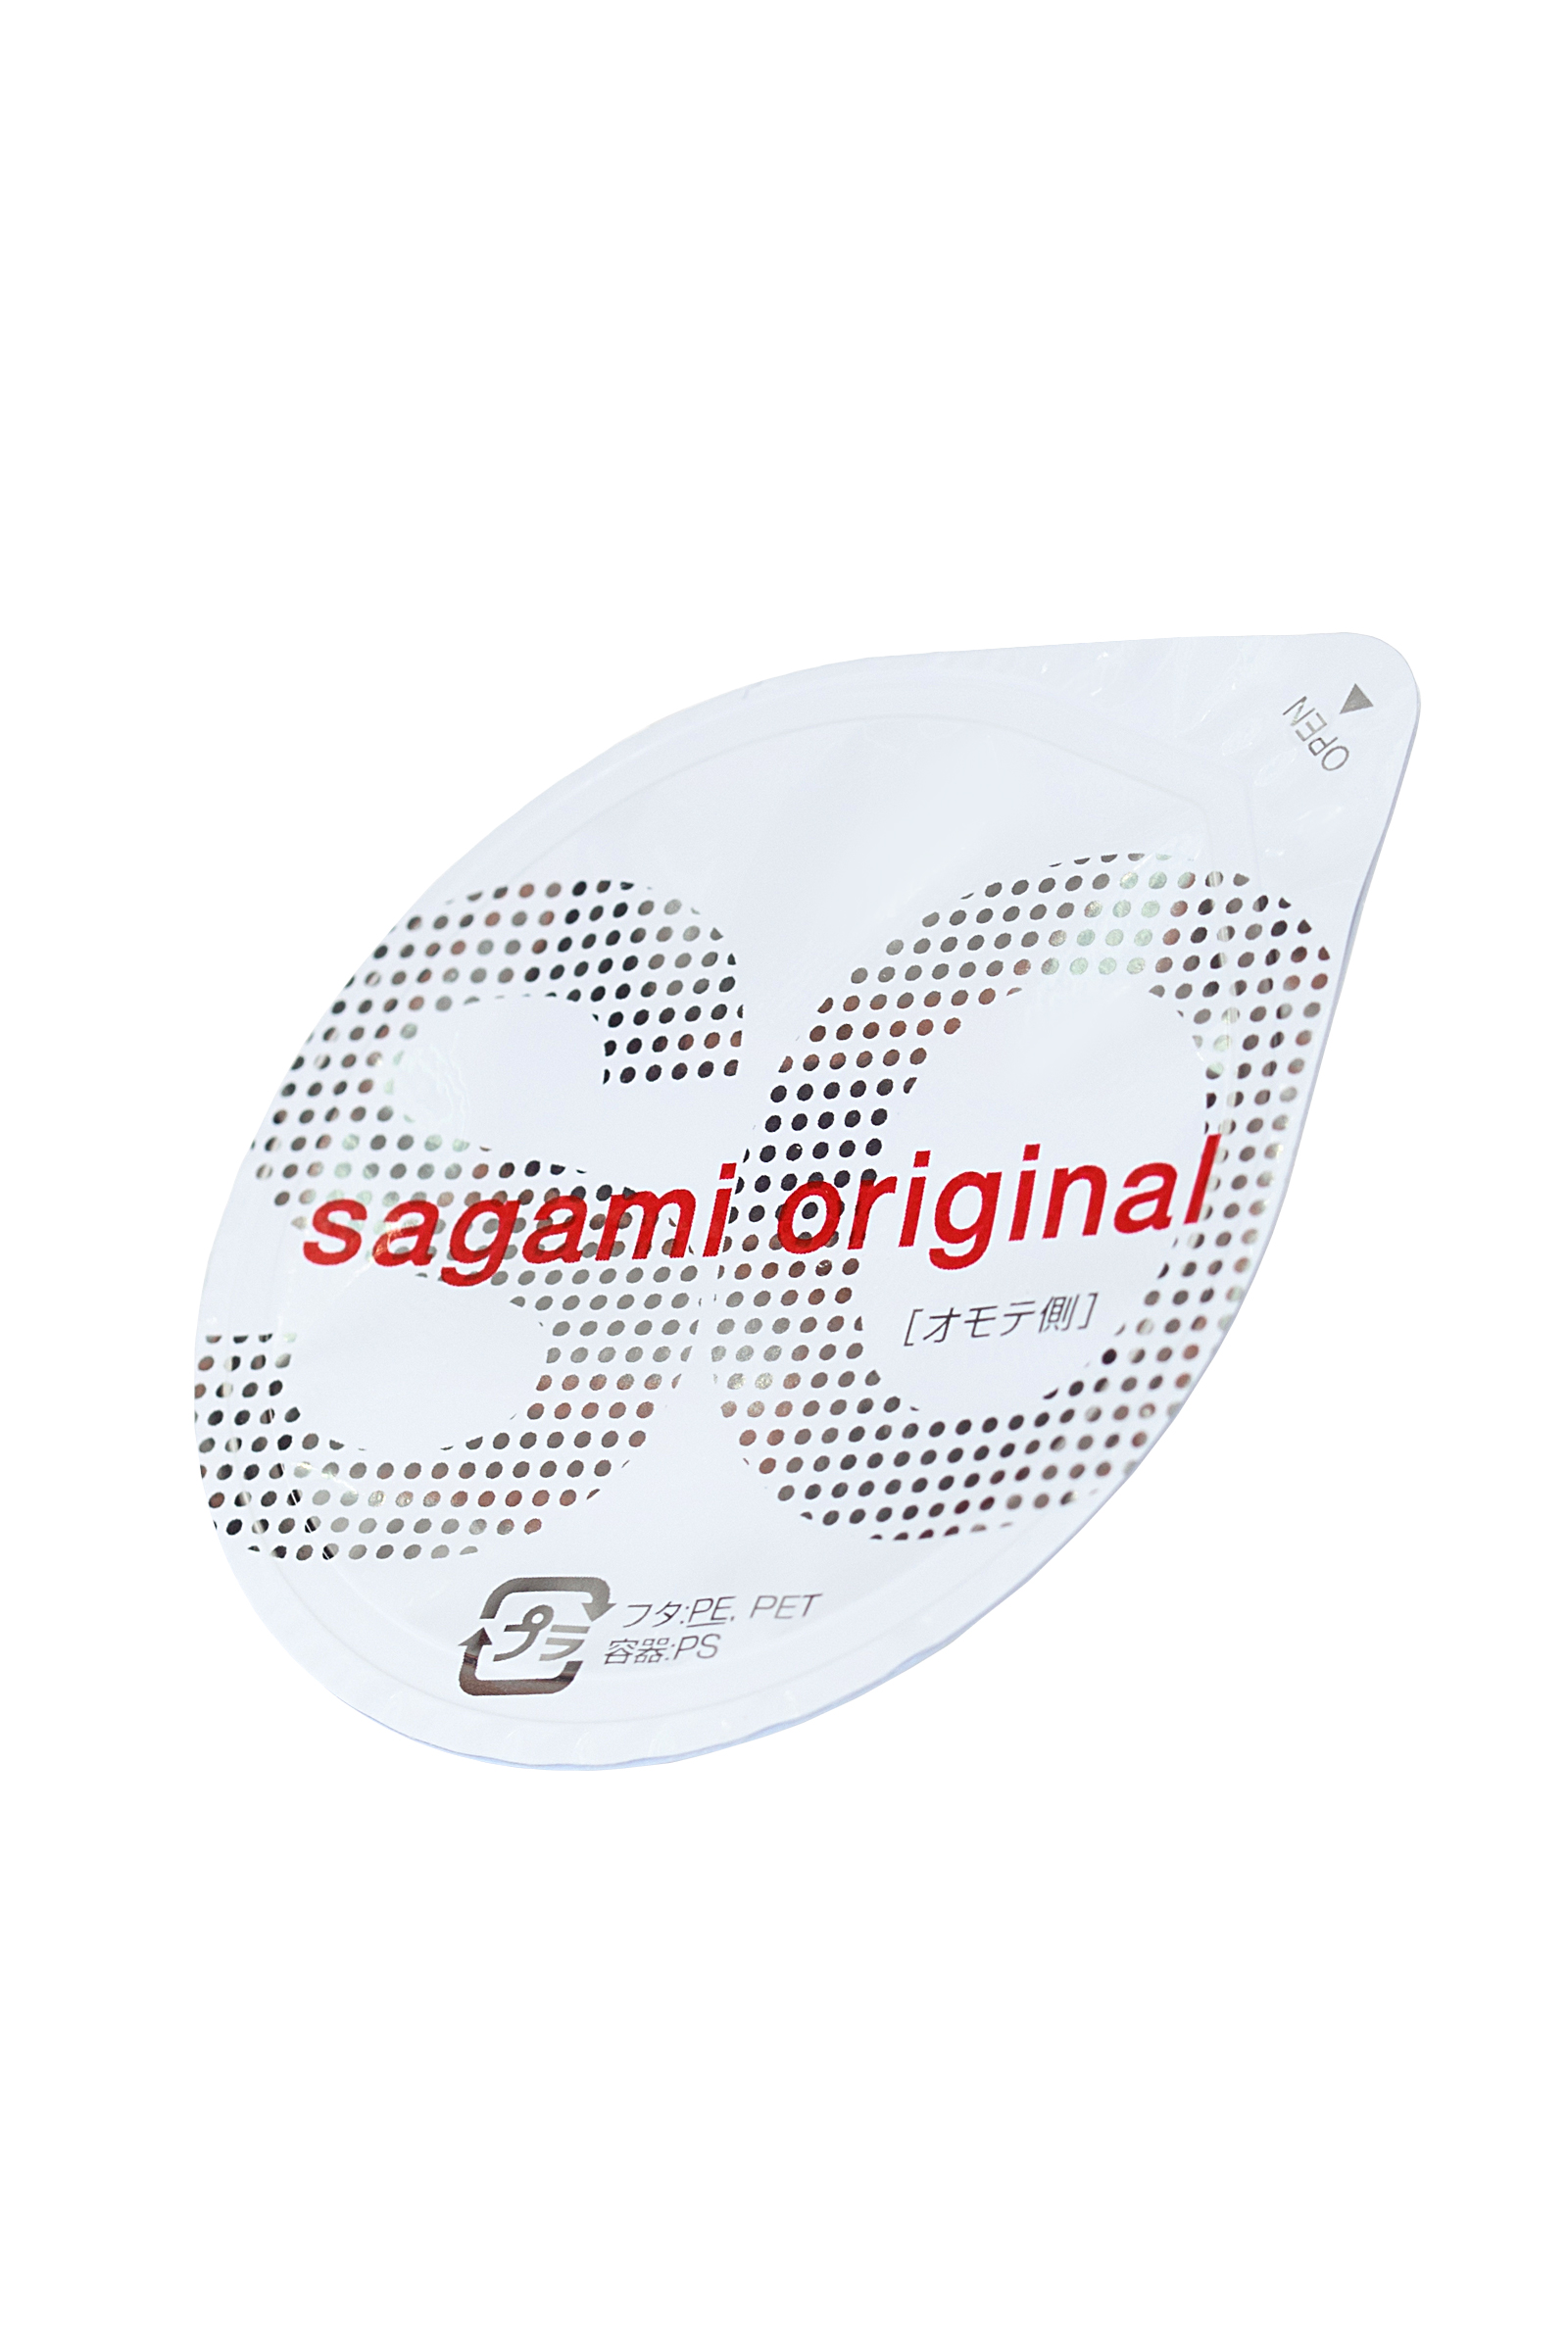 Презервативы Sagami, original 0.02, полиуретан, ультратонкие, гладкие, 19 см, 5,8 см, 2 шт. фото 1. Фото N6